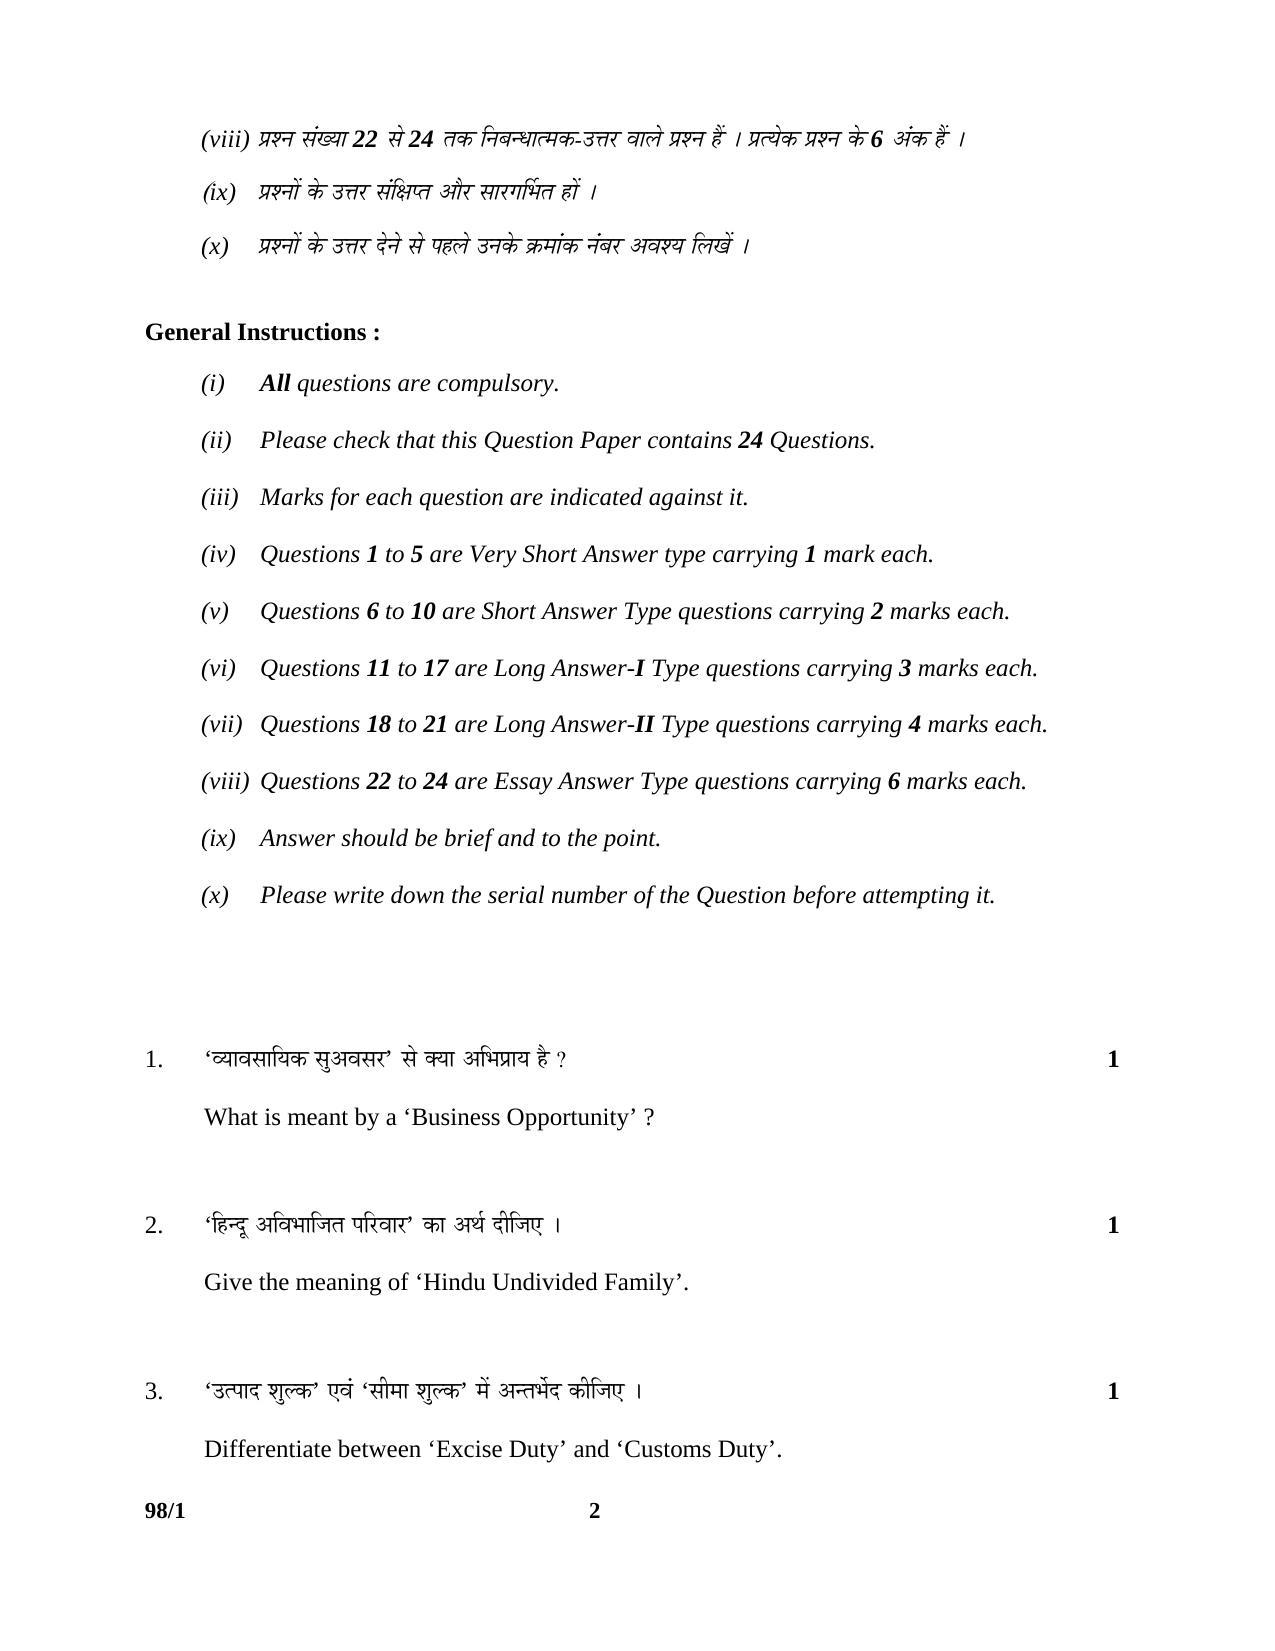 CBSE Class 12 98-1 ENTREPRENEURSHIP 2016 Question Paper - Page 2